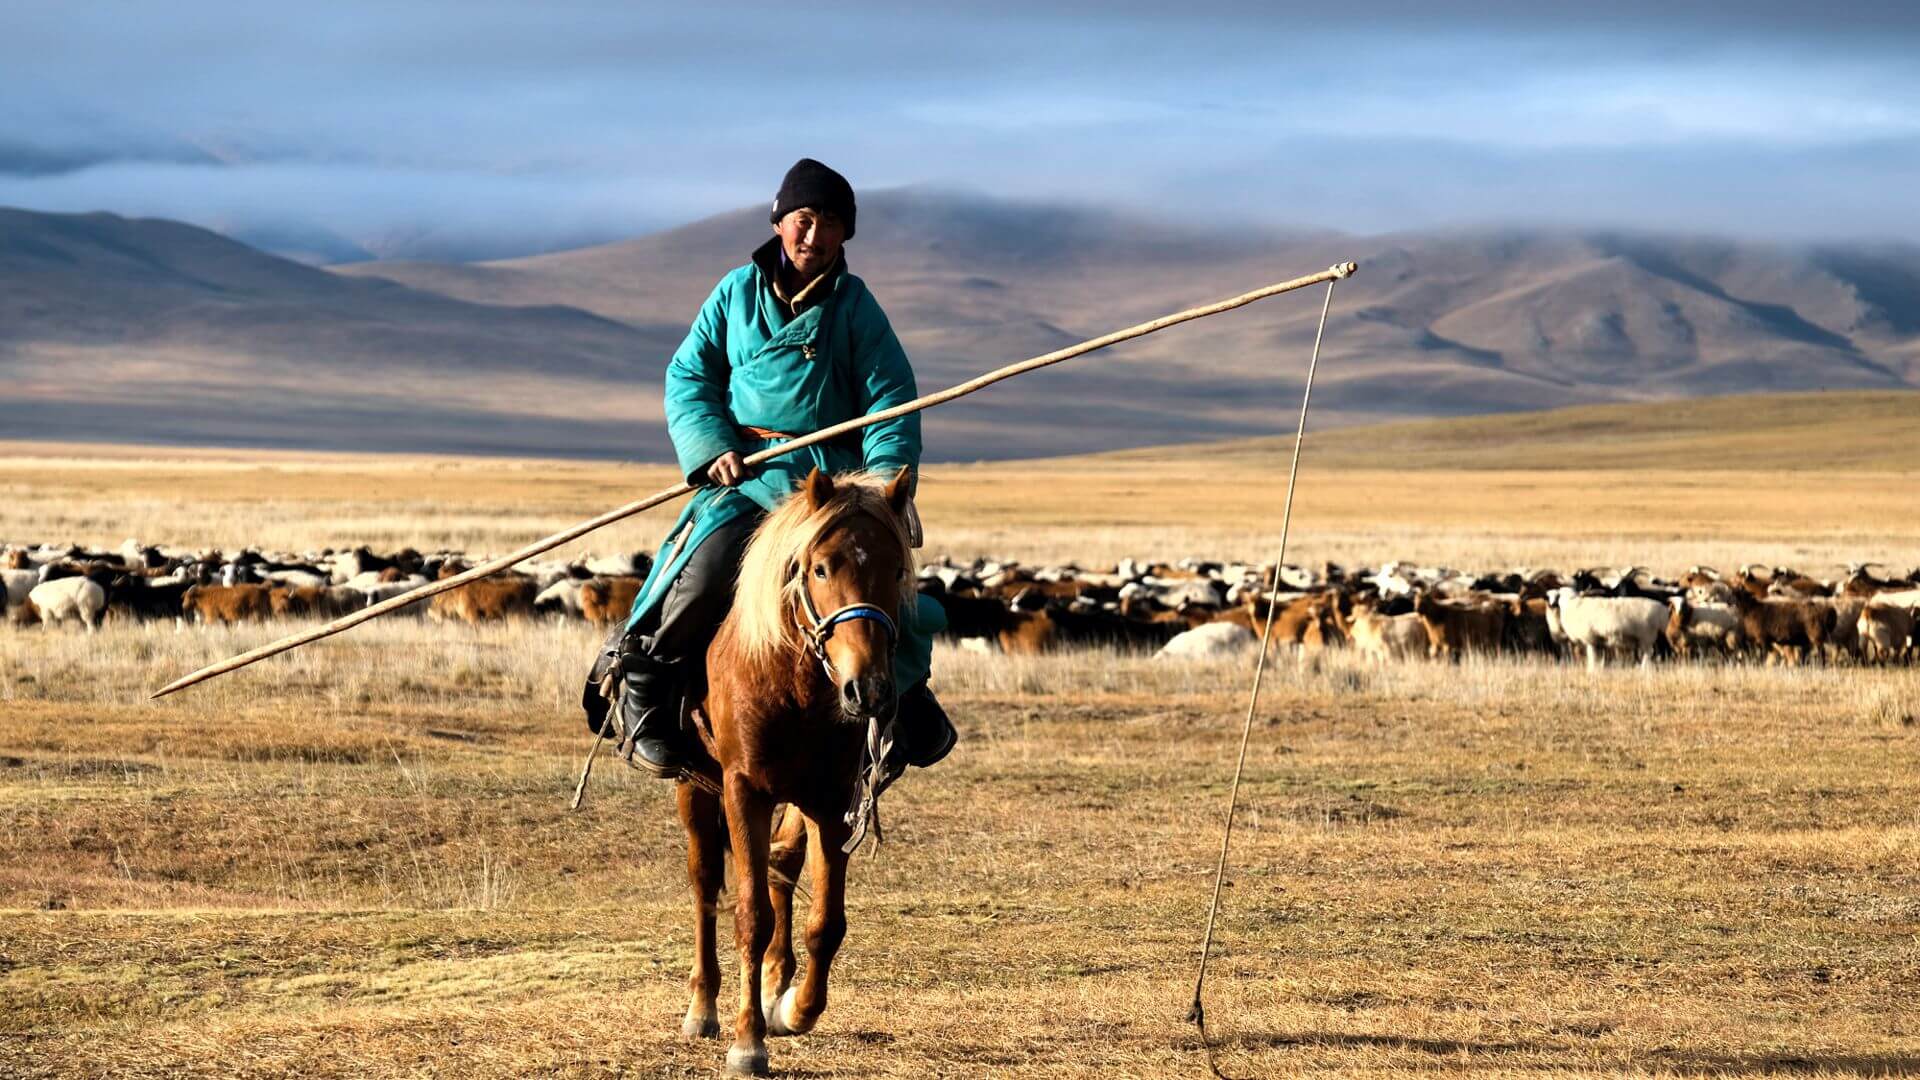 mongolian men 016 1